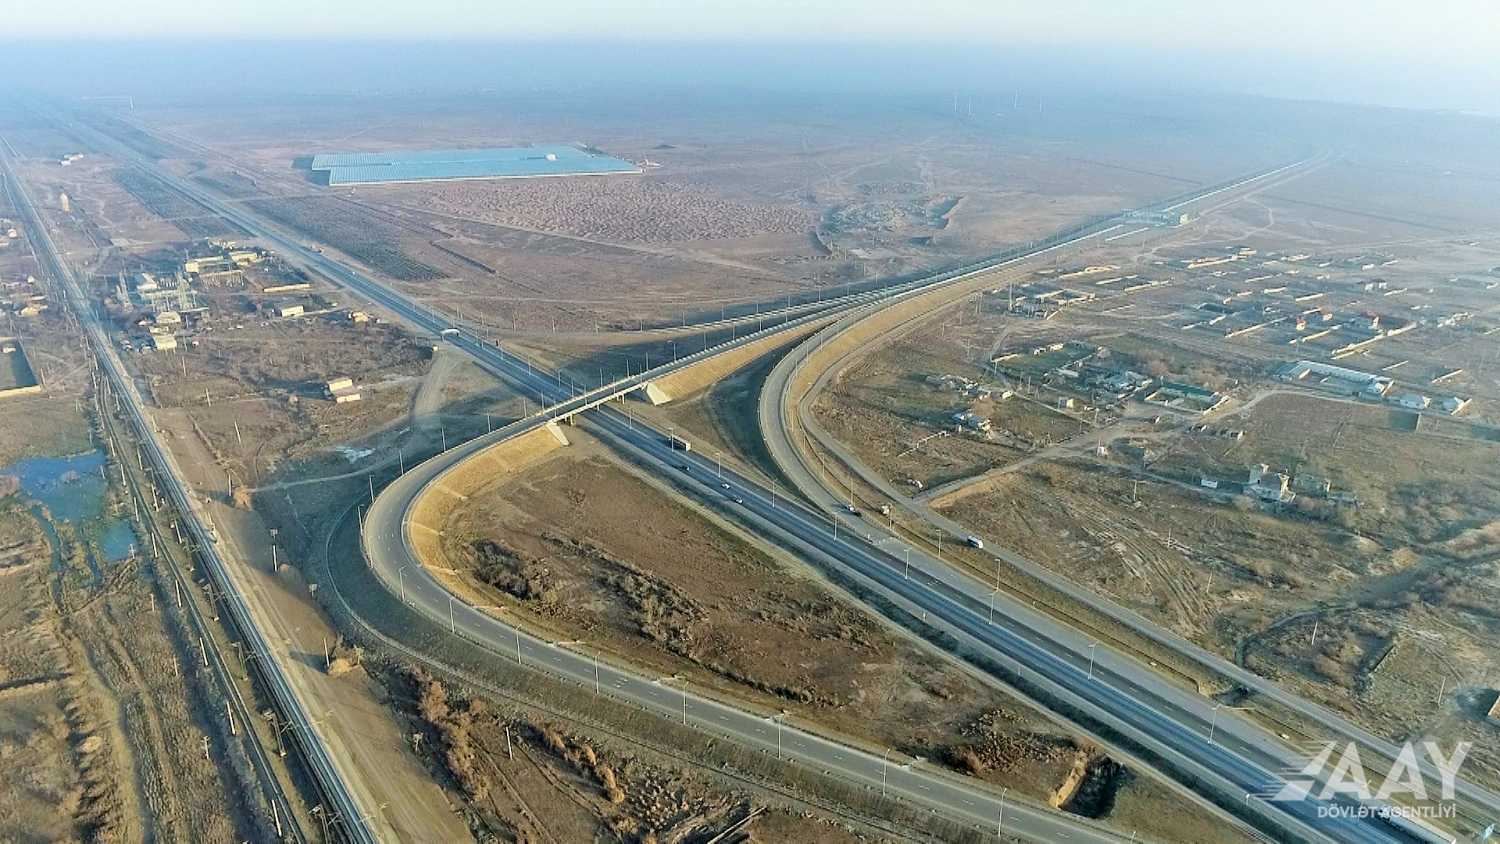 Обнародован планируемый срок сдачи в эксплуатацию первой в Азербайджане платной автомагистрали